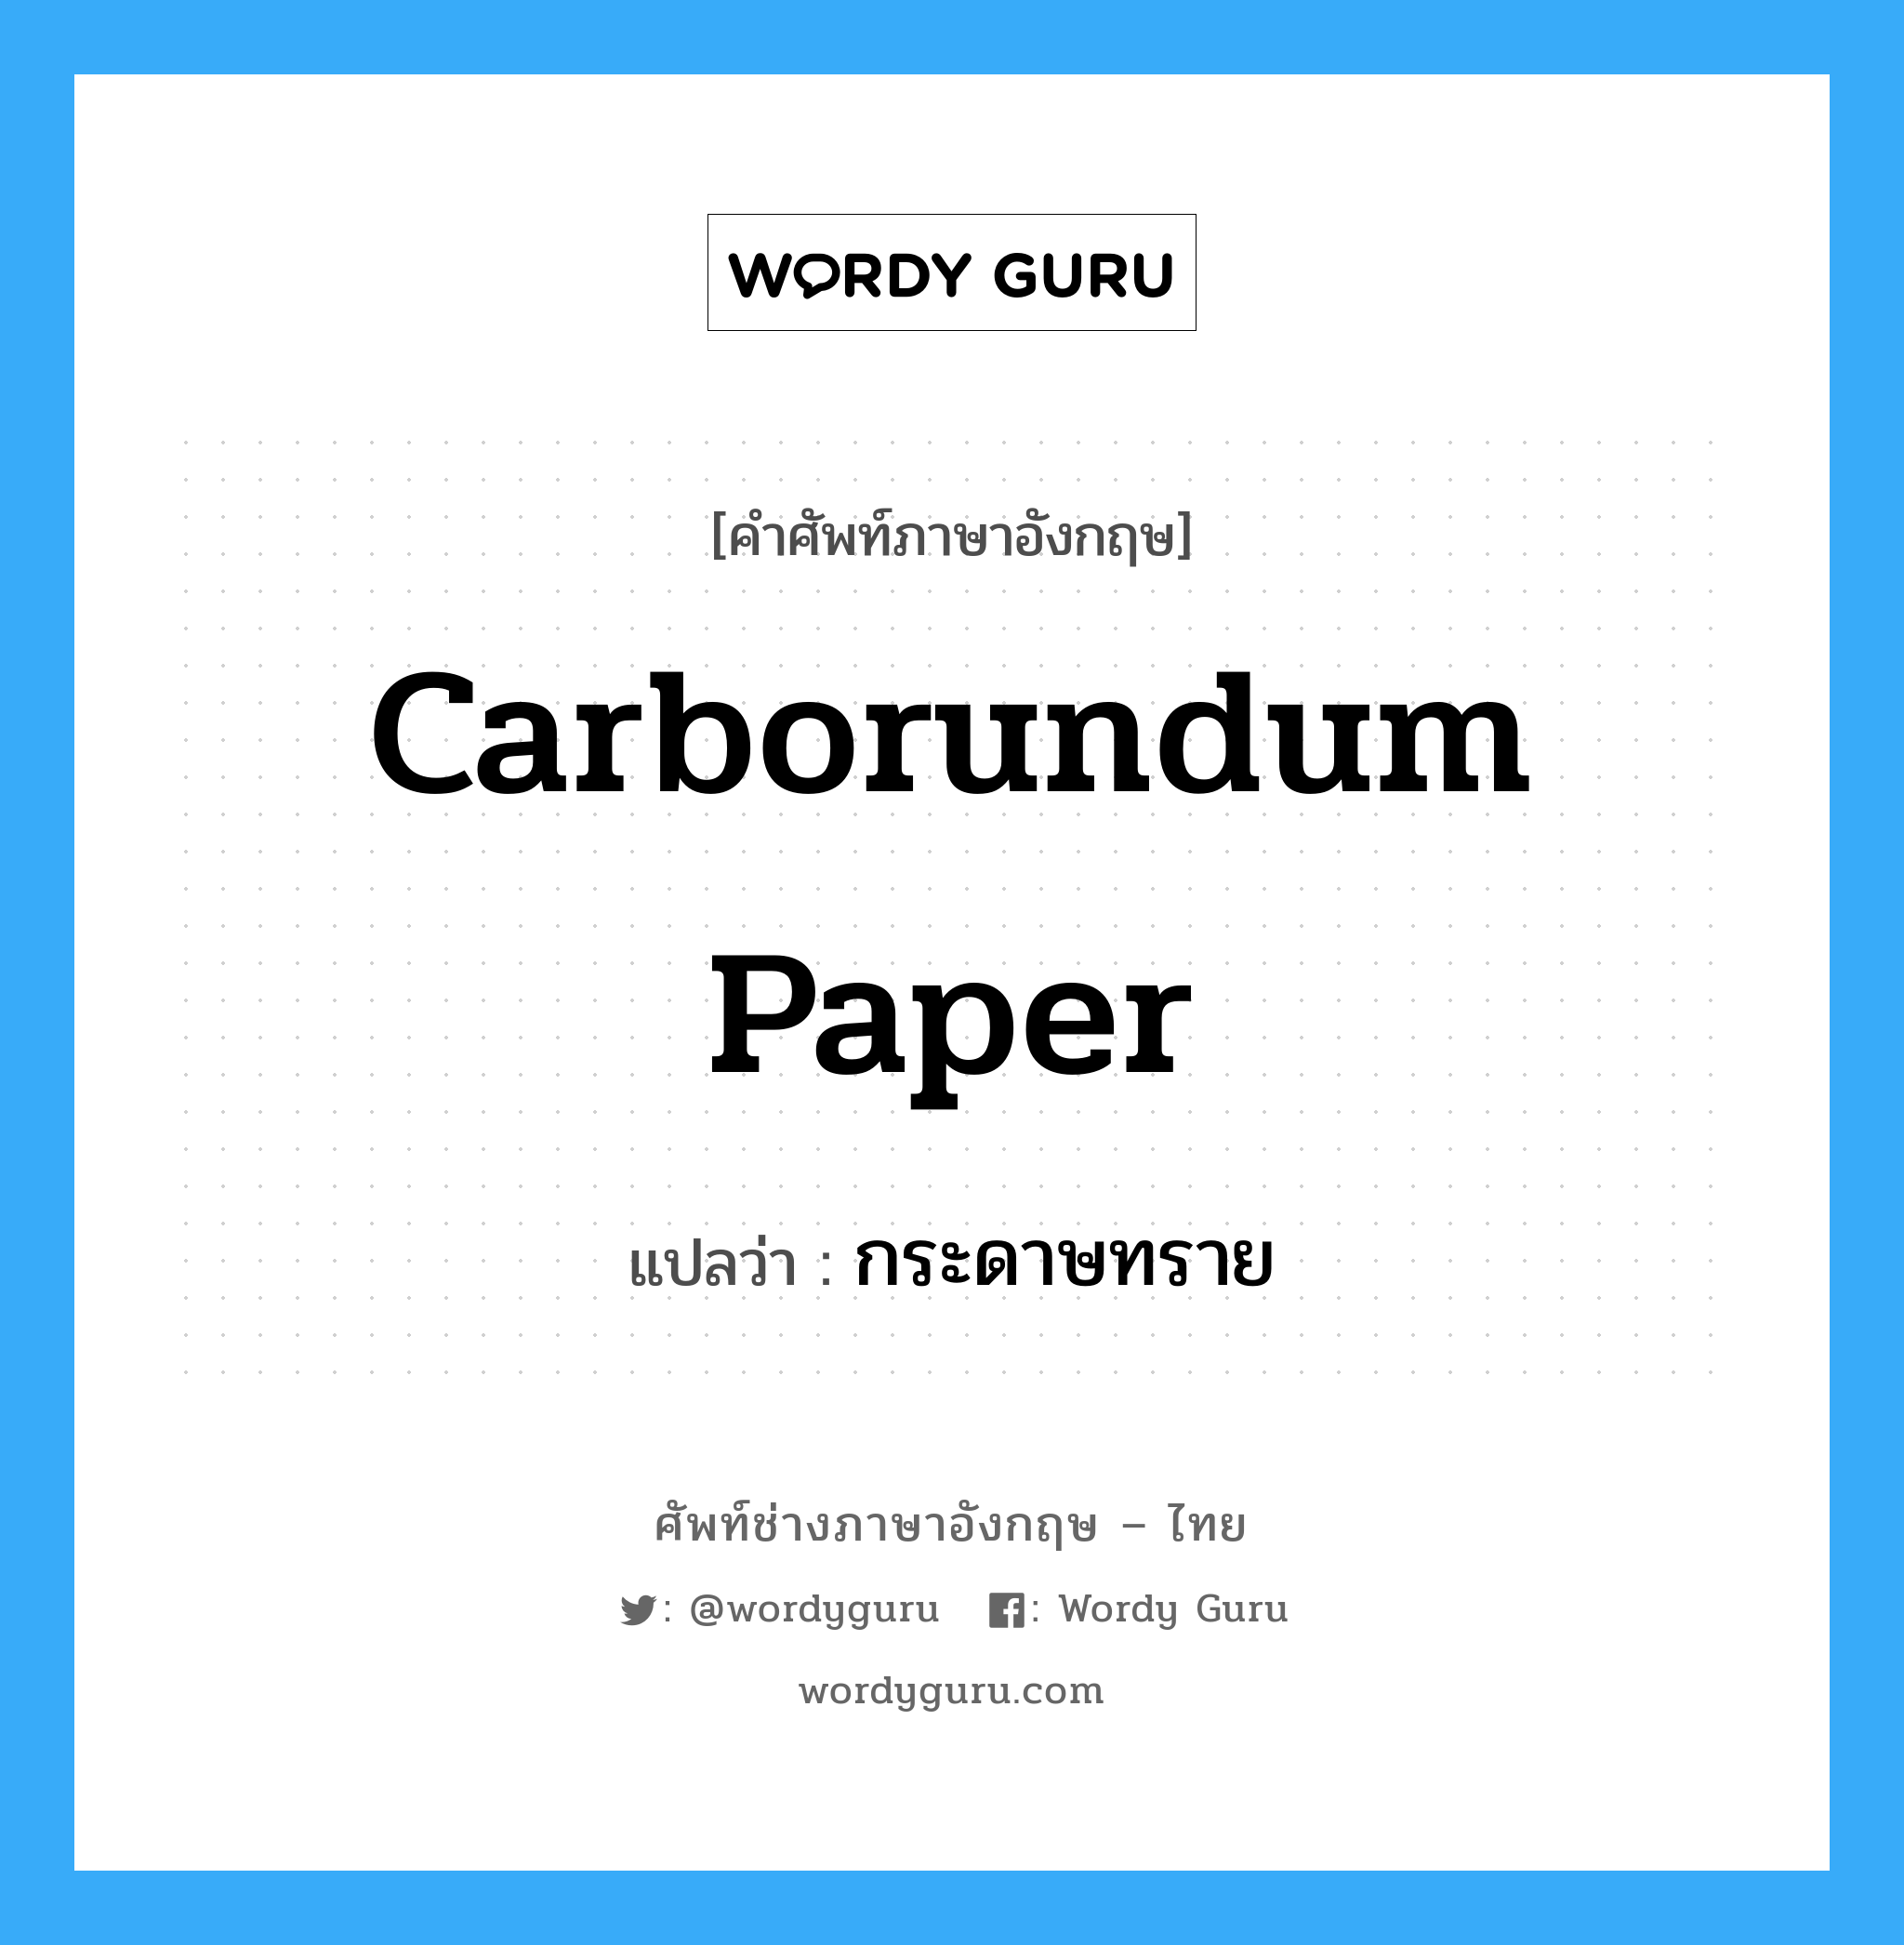 กระดาษทราย ภาษาอังกฤษ?, คำศัพท์ช่างภาษาอังกฤษ - ไทย กระดาษทราย คำศัพท์ภาษาอังกฤษ กระดาษทราย แปลว่า carborundum paper